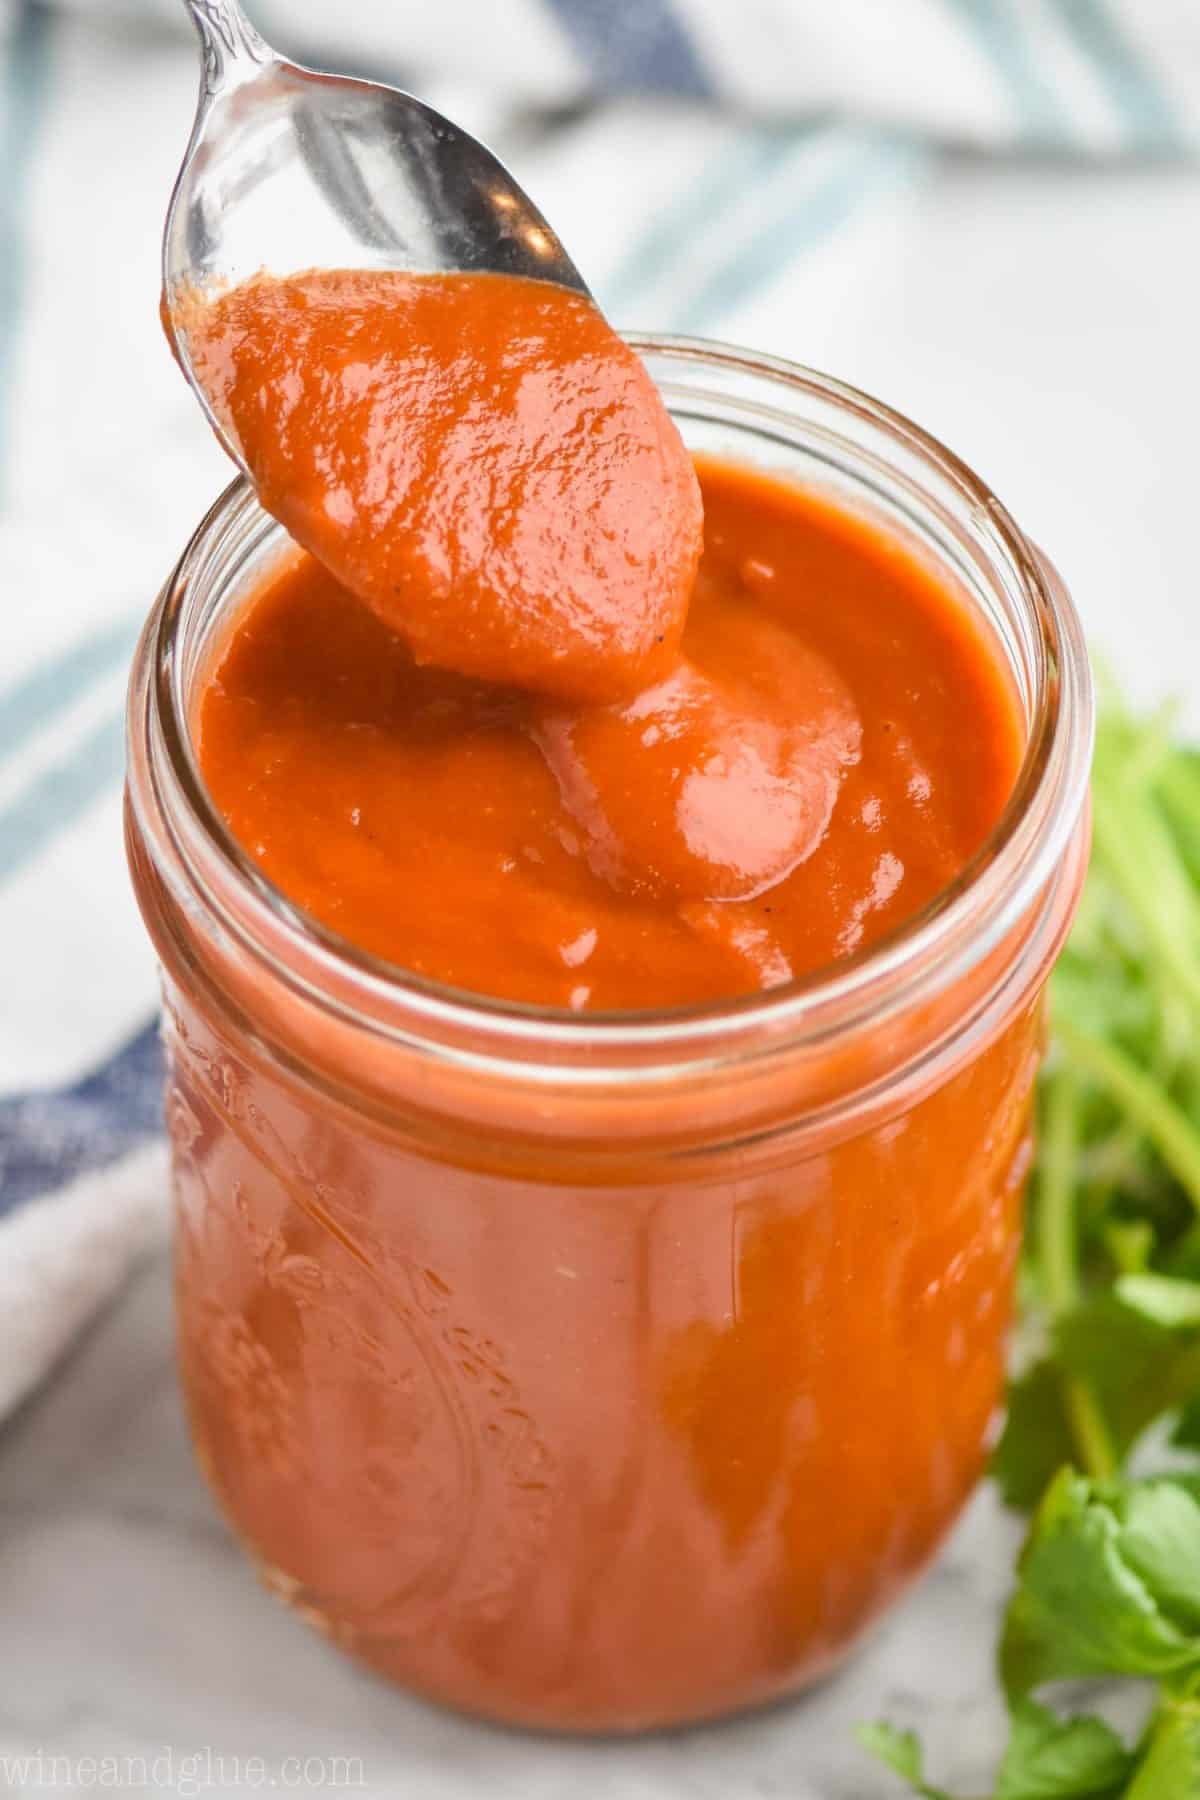 Easy Homemade Blender Enchilada Sauce